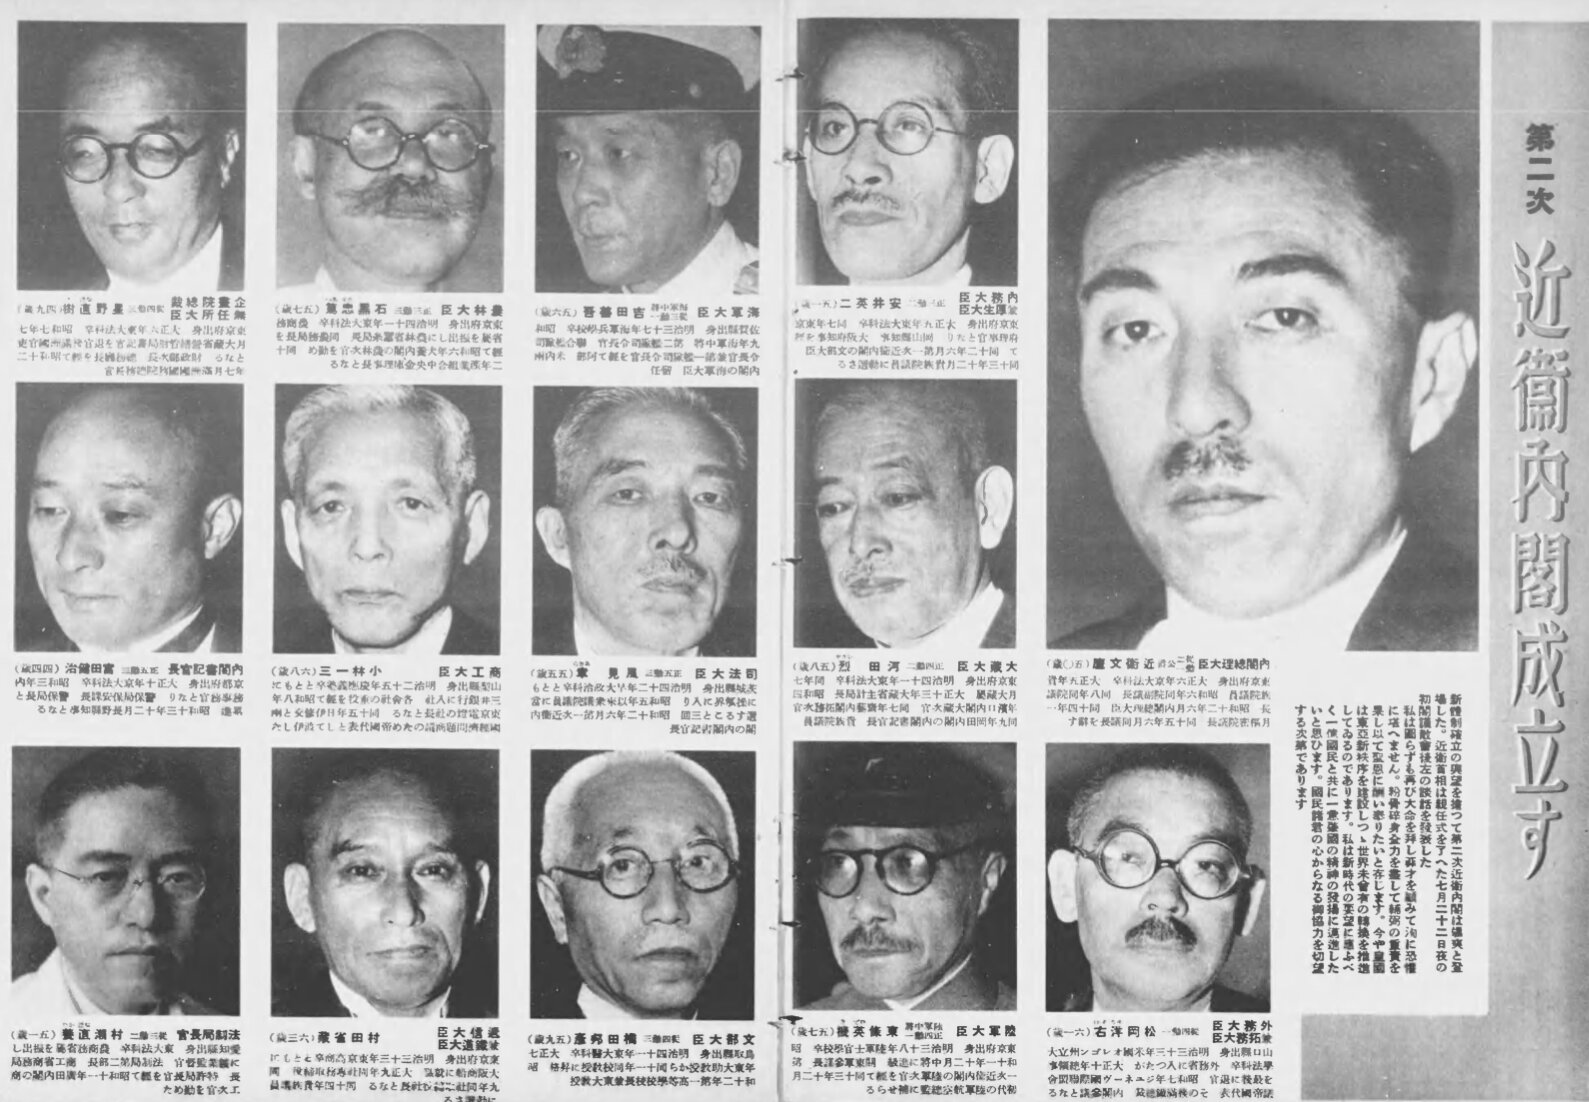 昭和15年7月31日号『写真週報』より。最下段、右から2番目が東條英機陸軍大臣